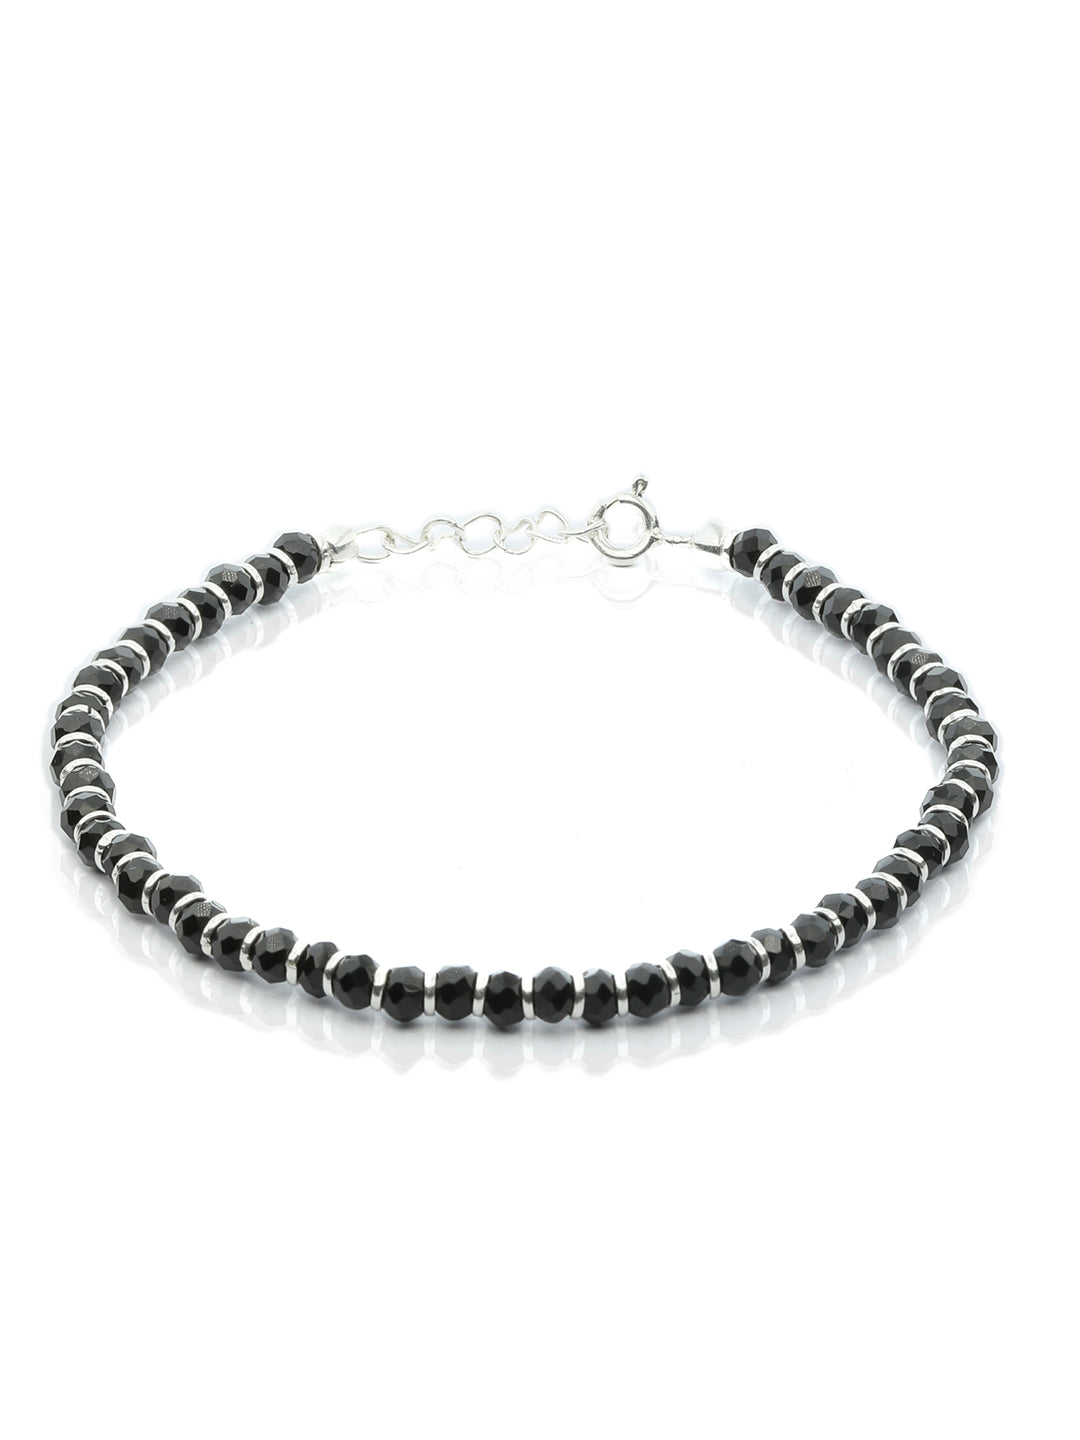 925 Sterling Silver Braided Men's Bali Bracelet - Queen of Hearts Jewelry